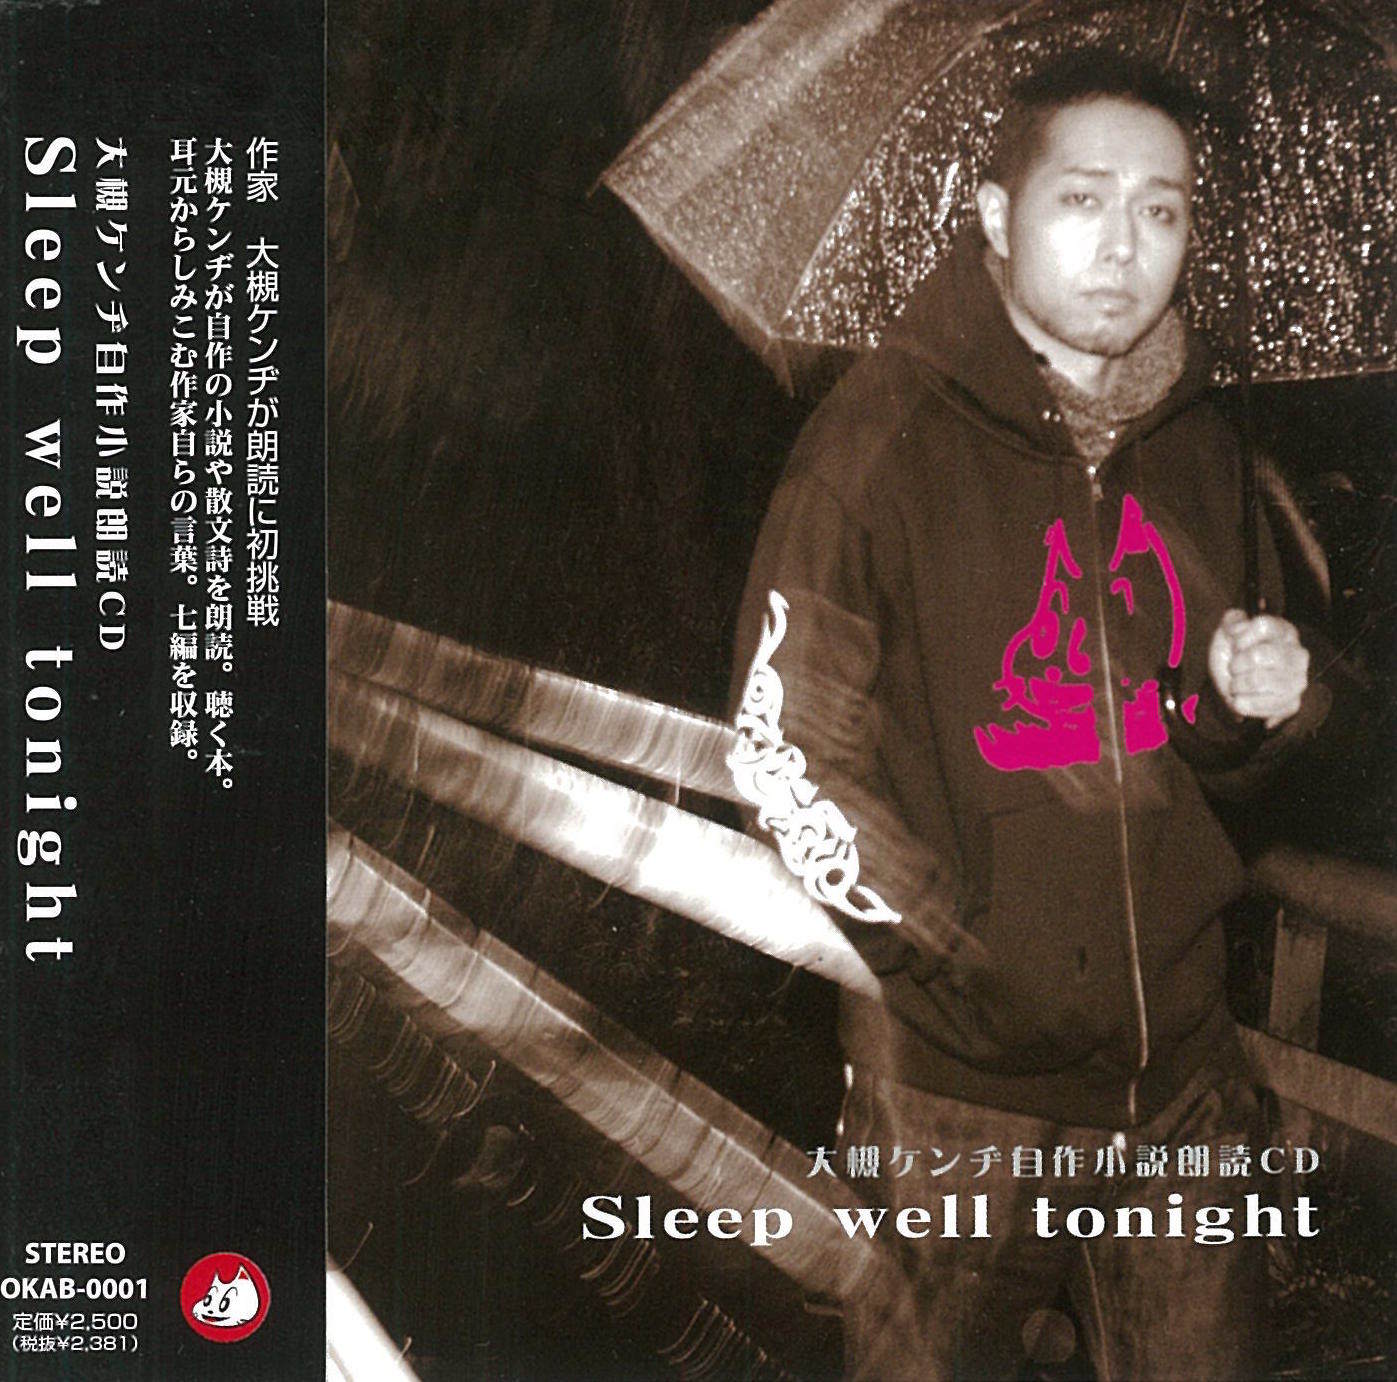 大槻ケンヂ自作小説朗読CD ｢Sleep well tonight｣ オーケン企画 OFFICIAL WEB SHOP